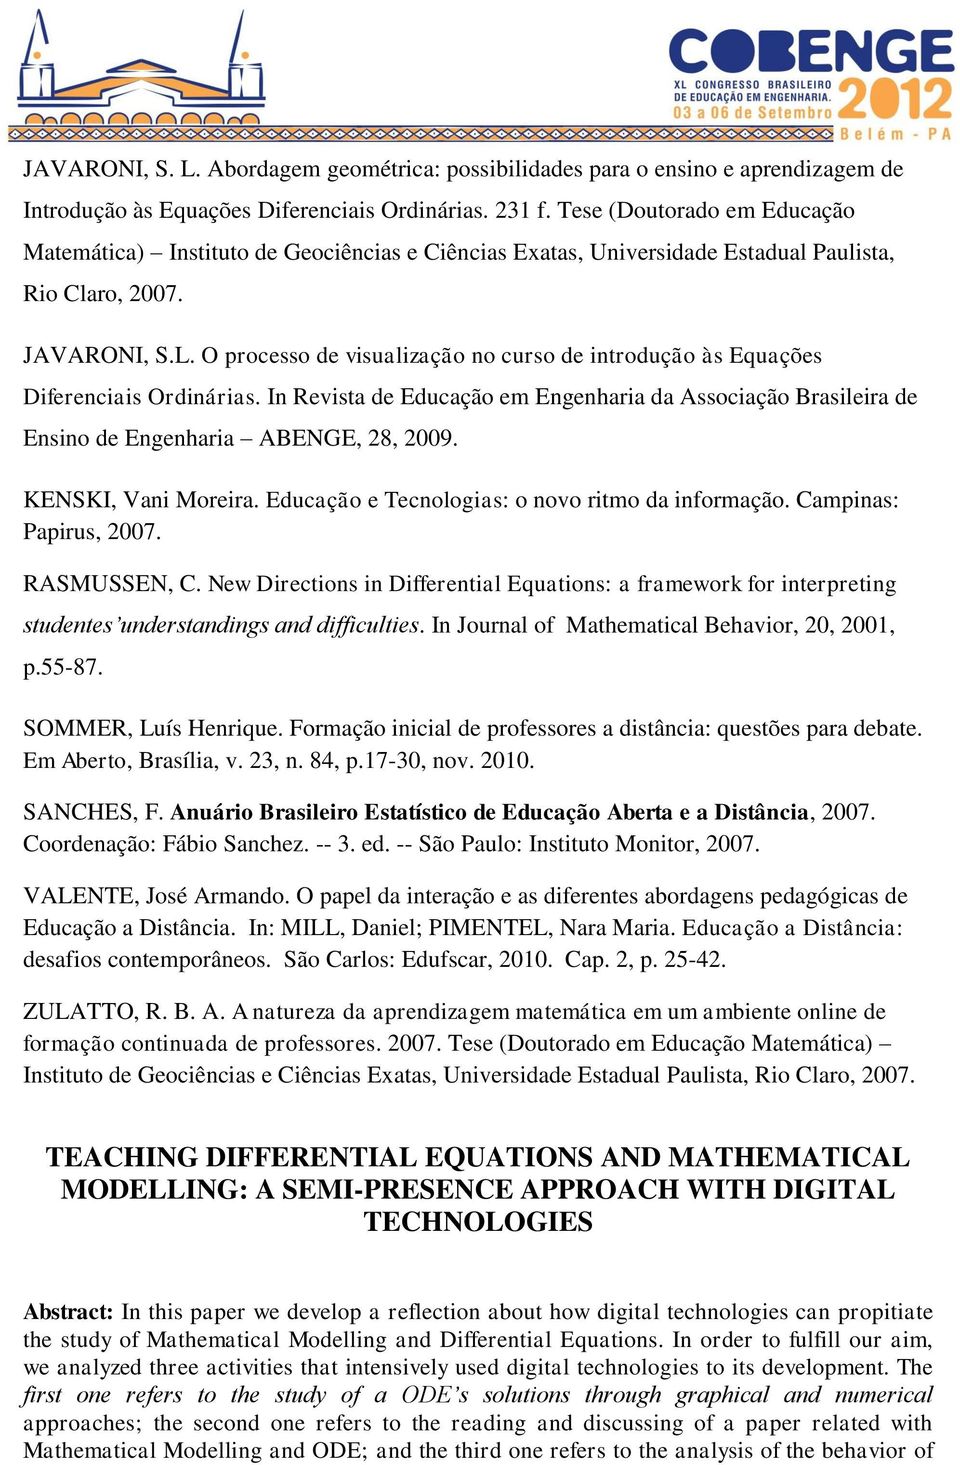 O processo de visualização no curso de introdução às Equações Diferenciais Ordinárias. In Revista de Educação em Engenharia da Associação Brasileira de Ensino de Engenharia ABENGE, 28, 2009.